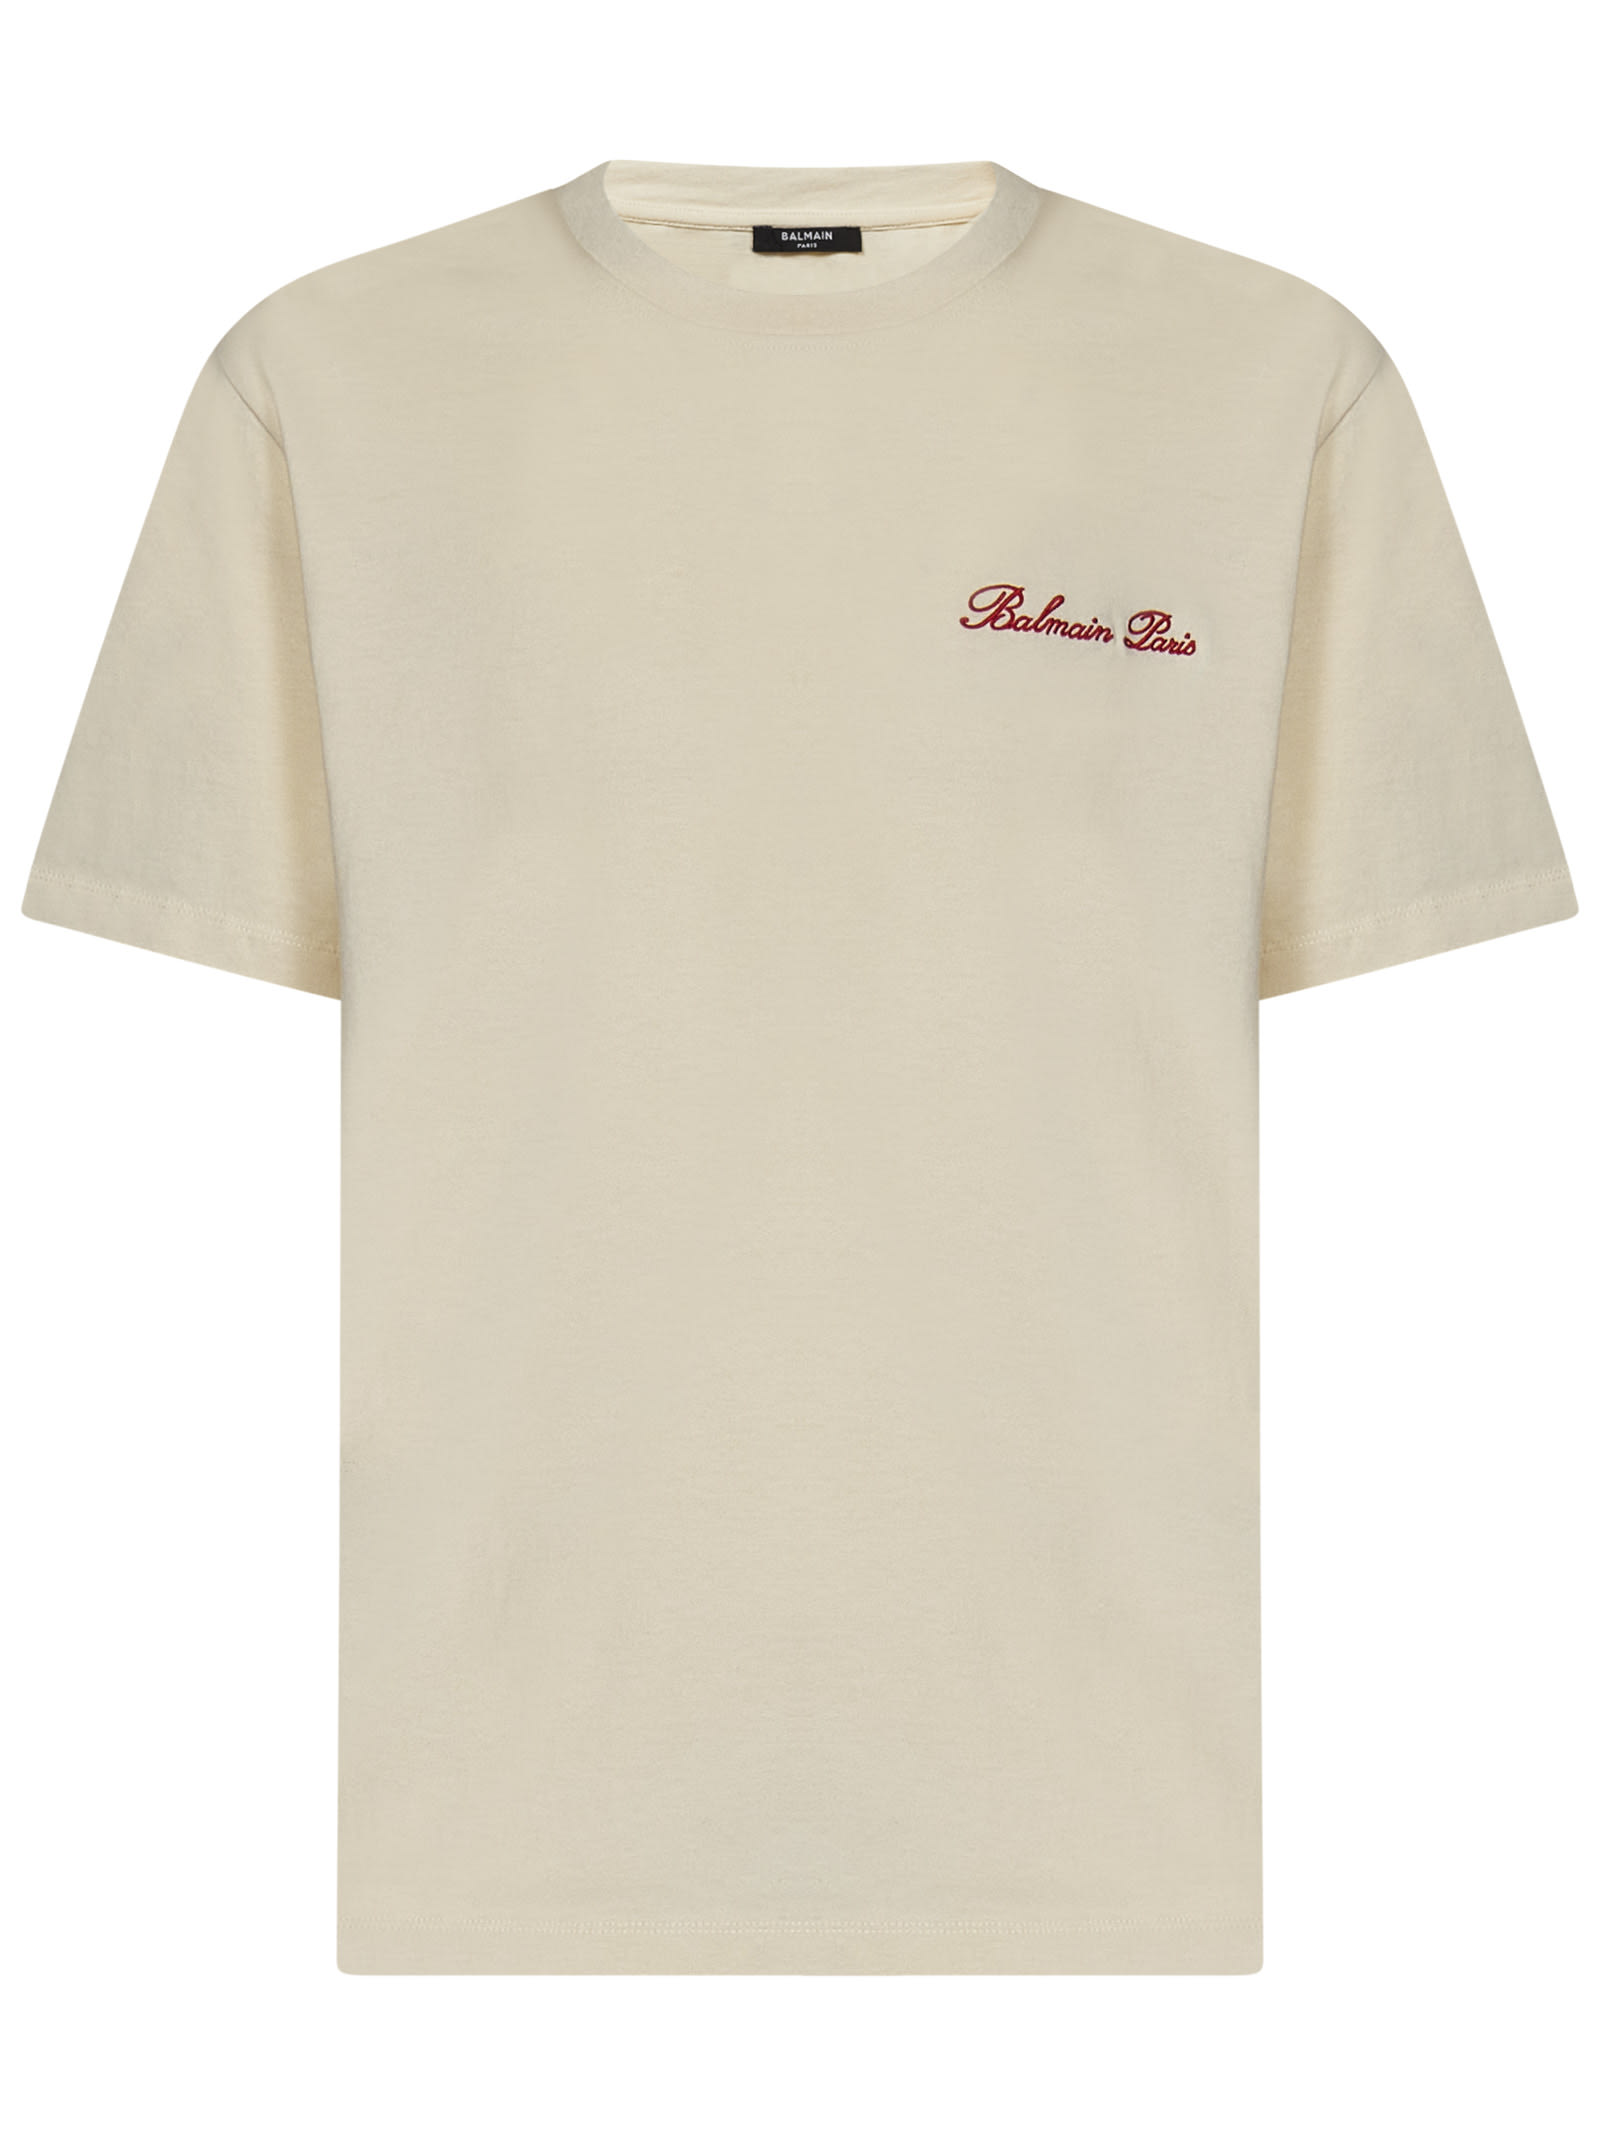 Shop Balmain Iconic Western T-shirt